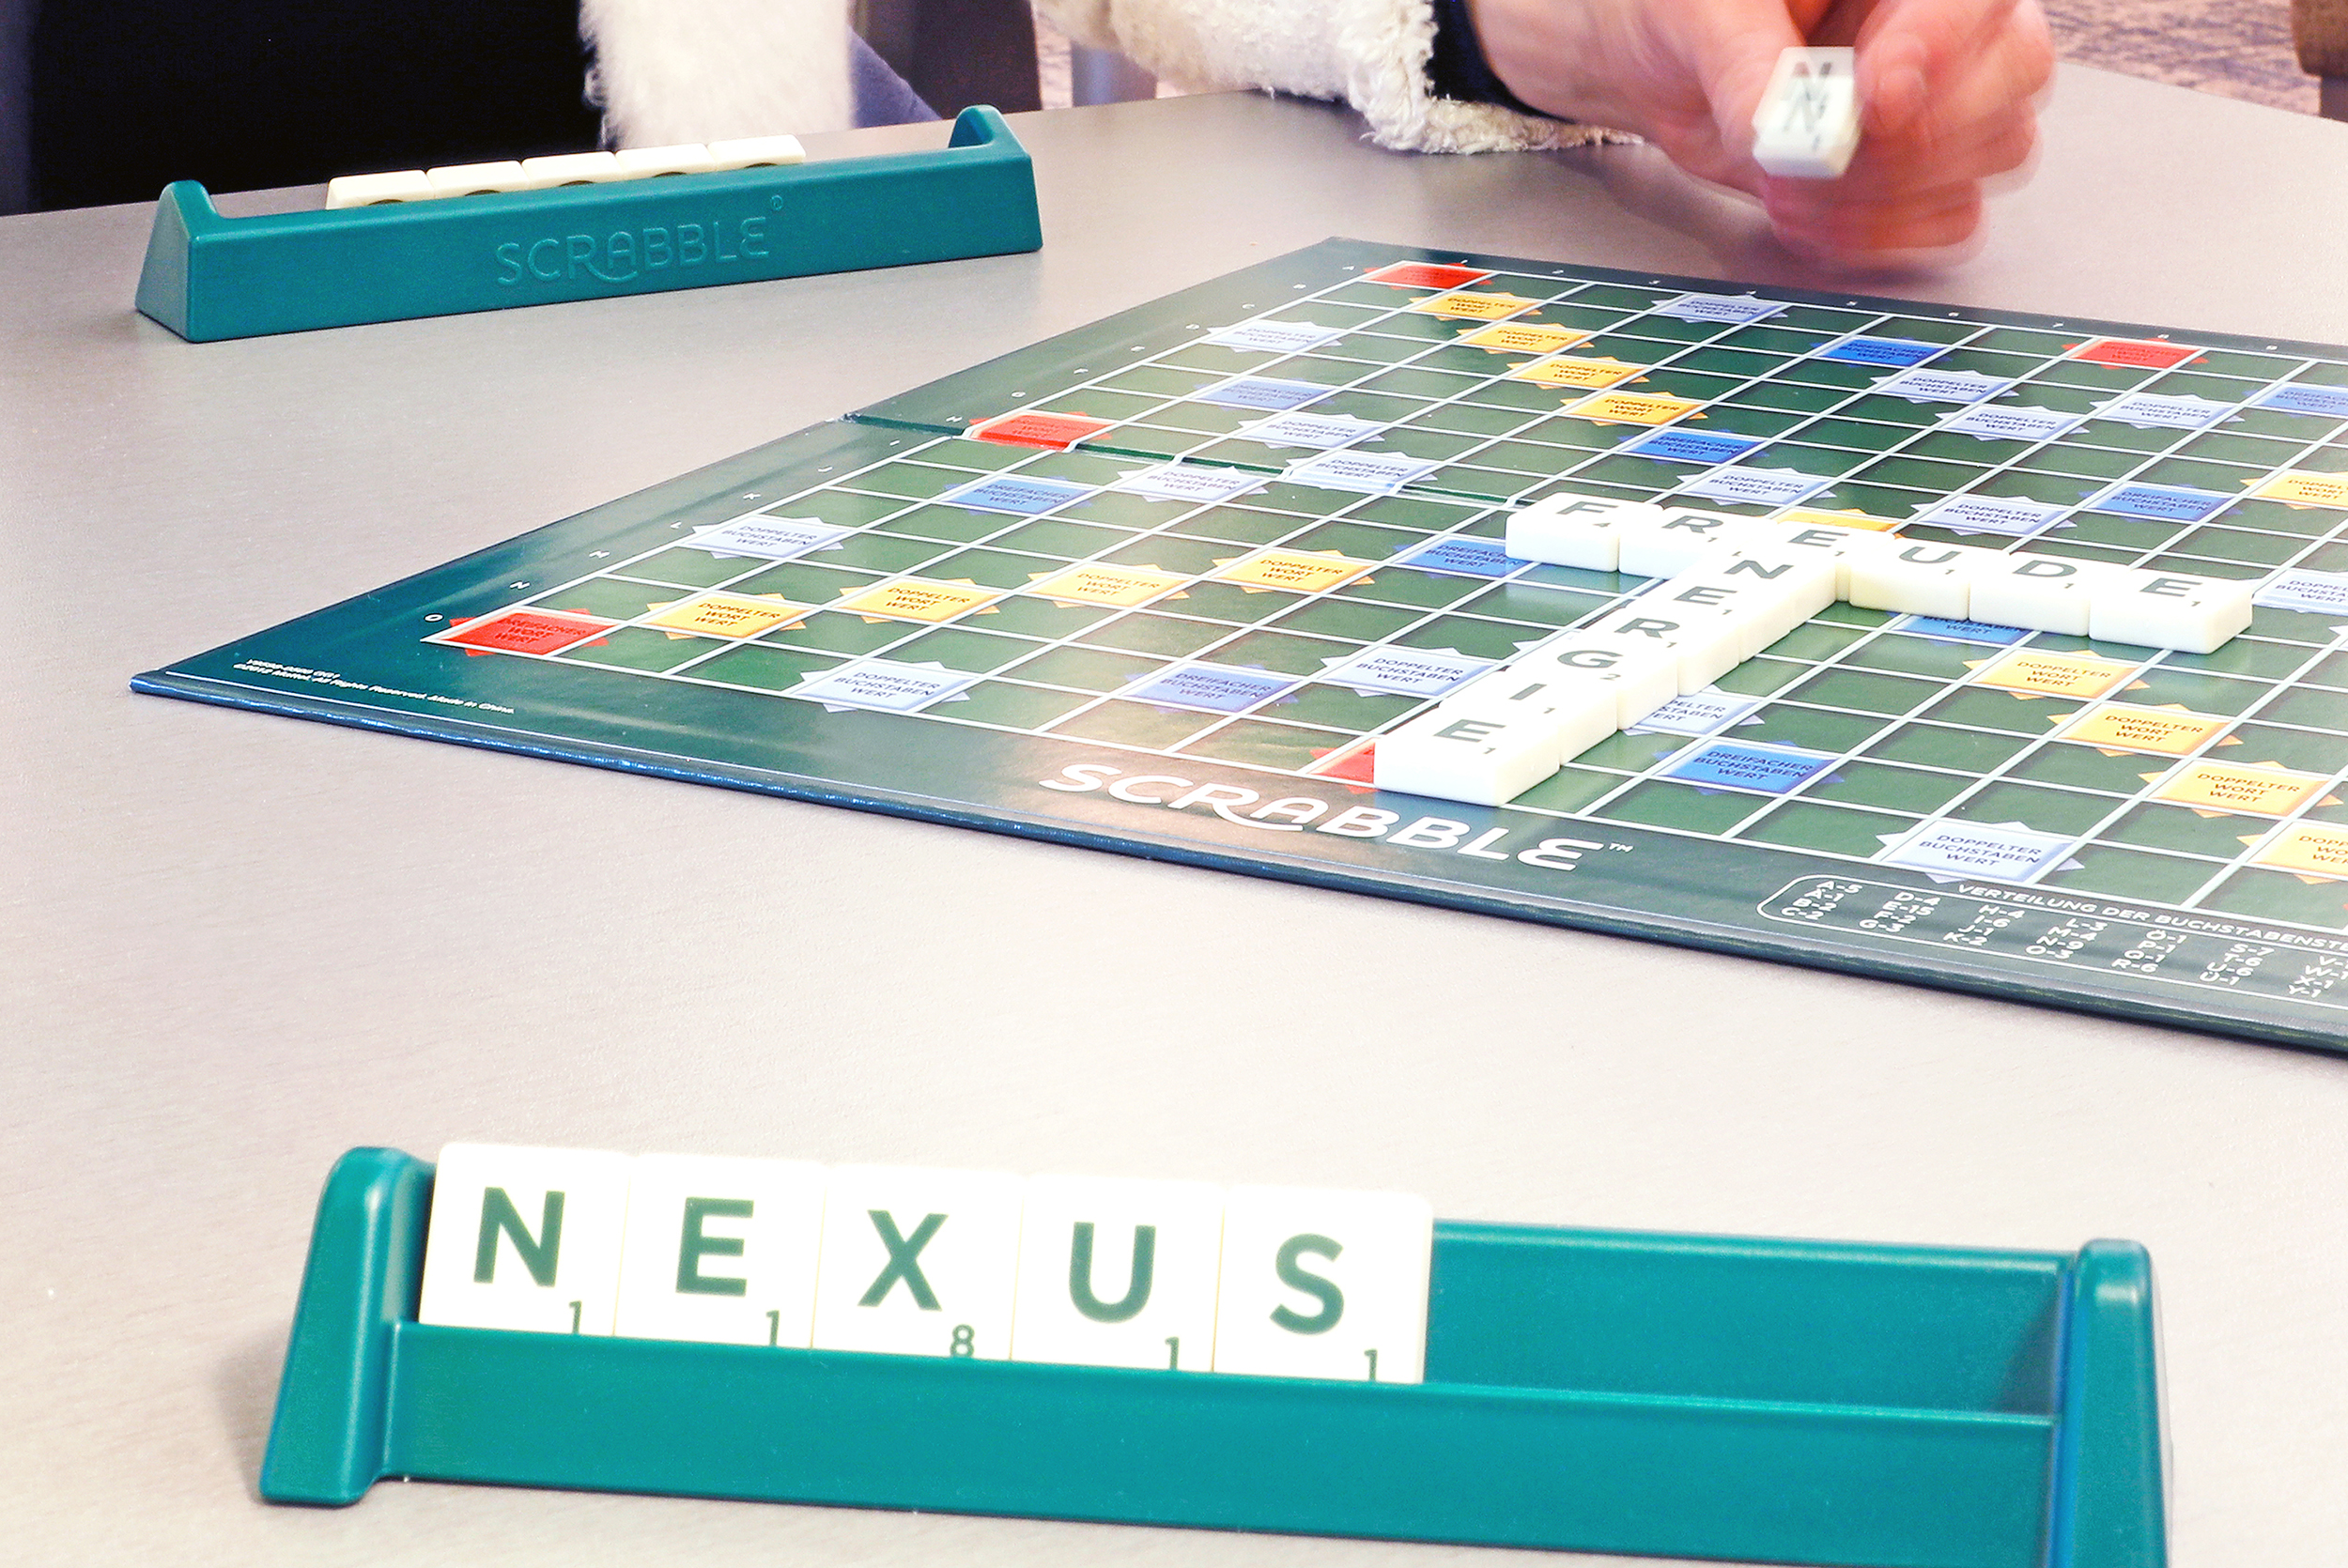 Nexus-Klinik Baden-Baden Scrabble